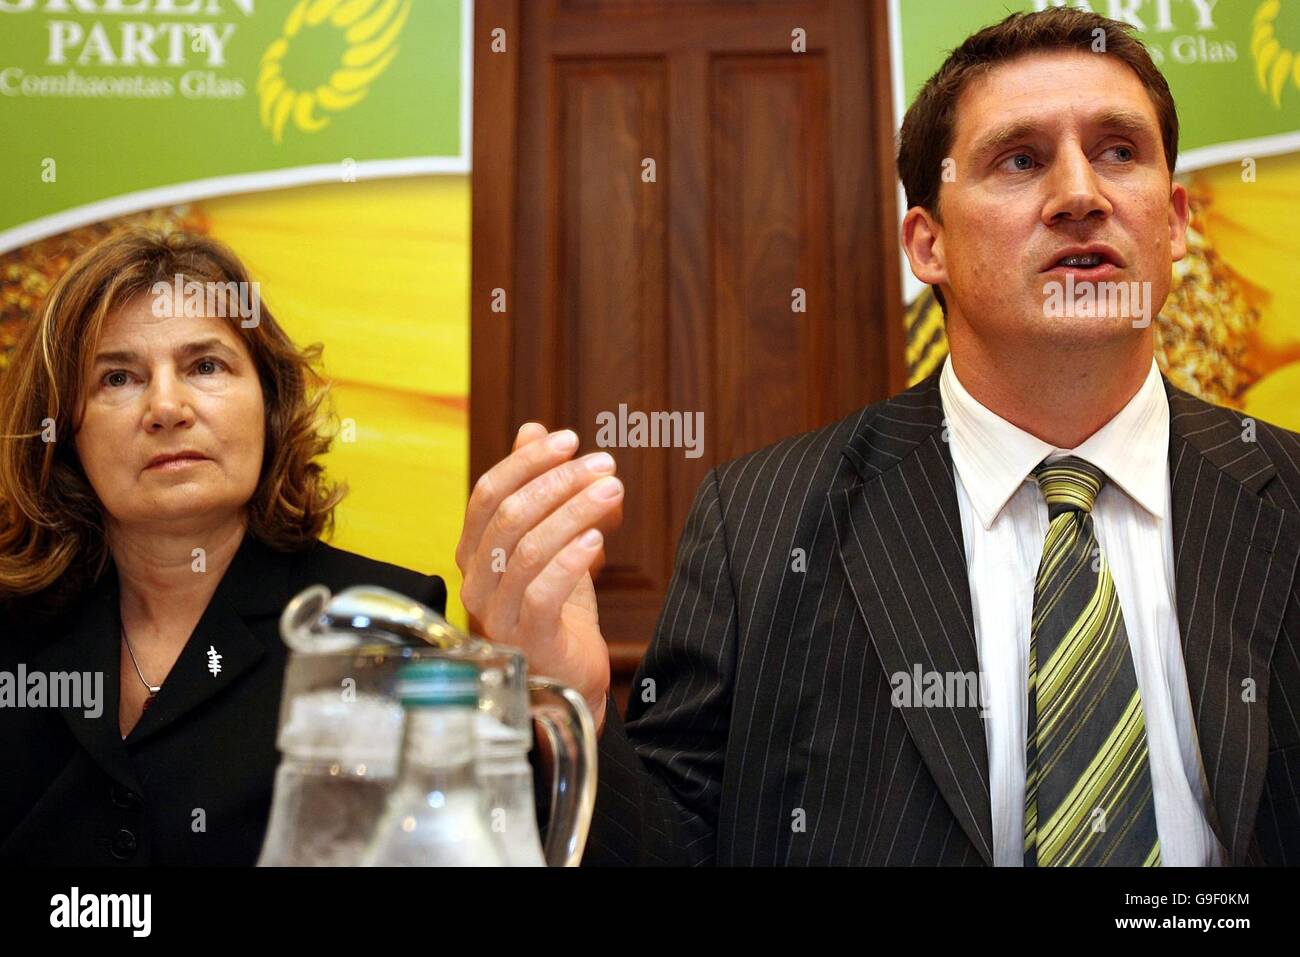 Elizabeth Davidson e Eamon Ryan parlano con i media durante una conferenza stampa al Buswell's Hotel di Dublino per lanciare la politica delle piccole imprese del Green Party. Foto Stock